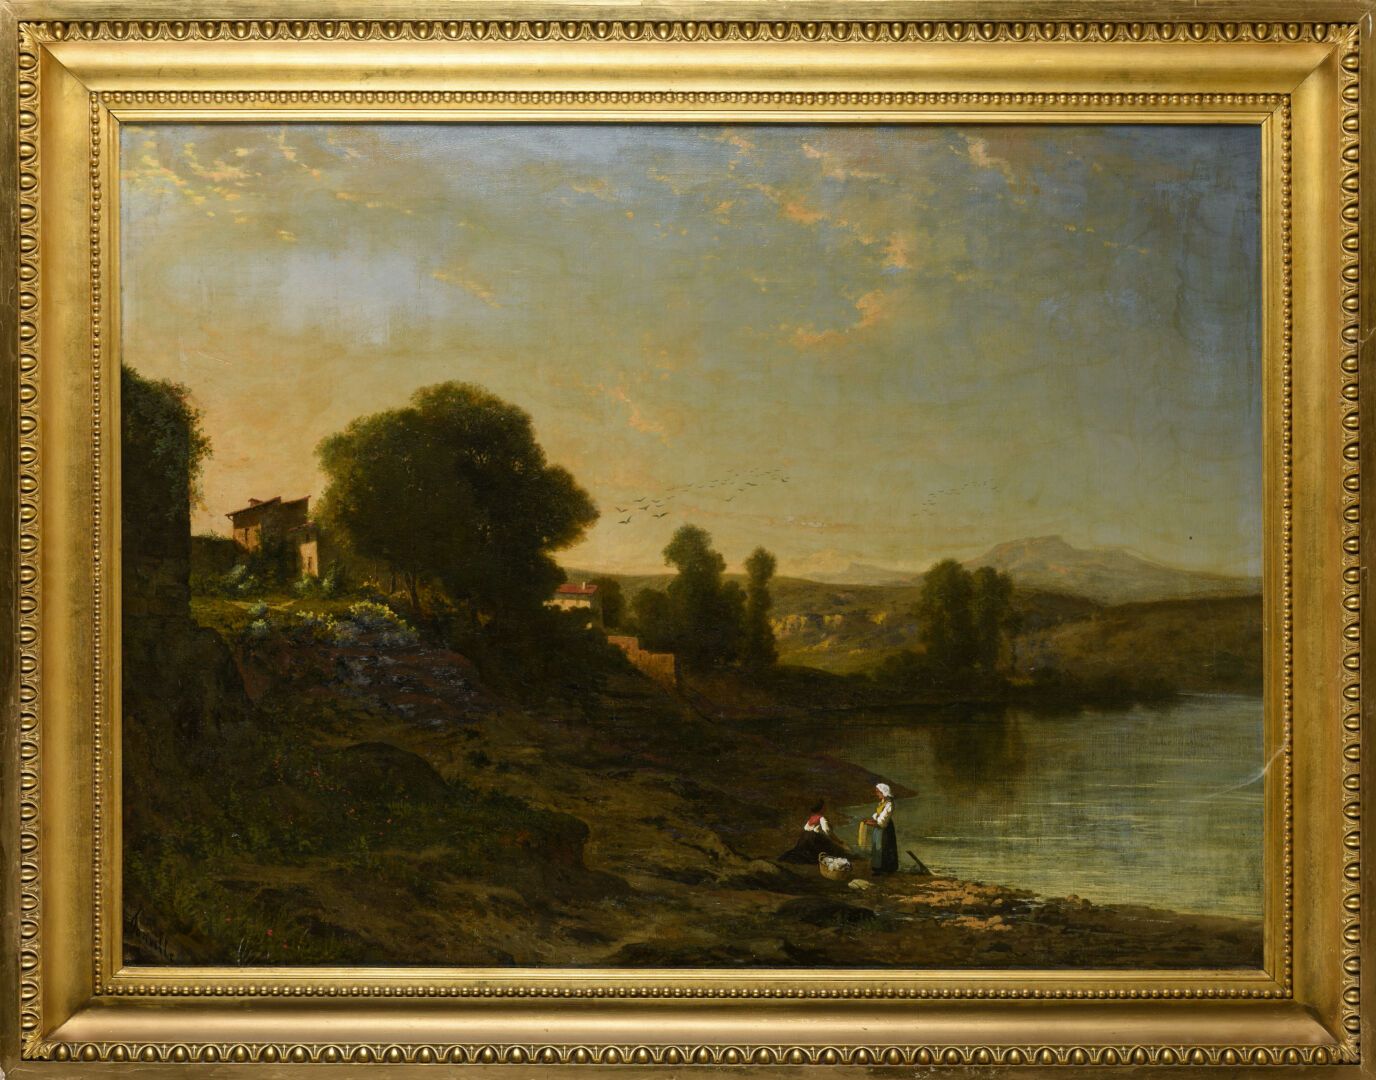 Null 霍勒斯-安托万-冯维尔 (1832 - 1914)
景观
布面油画 
75 x 100厘米
左下方有签名